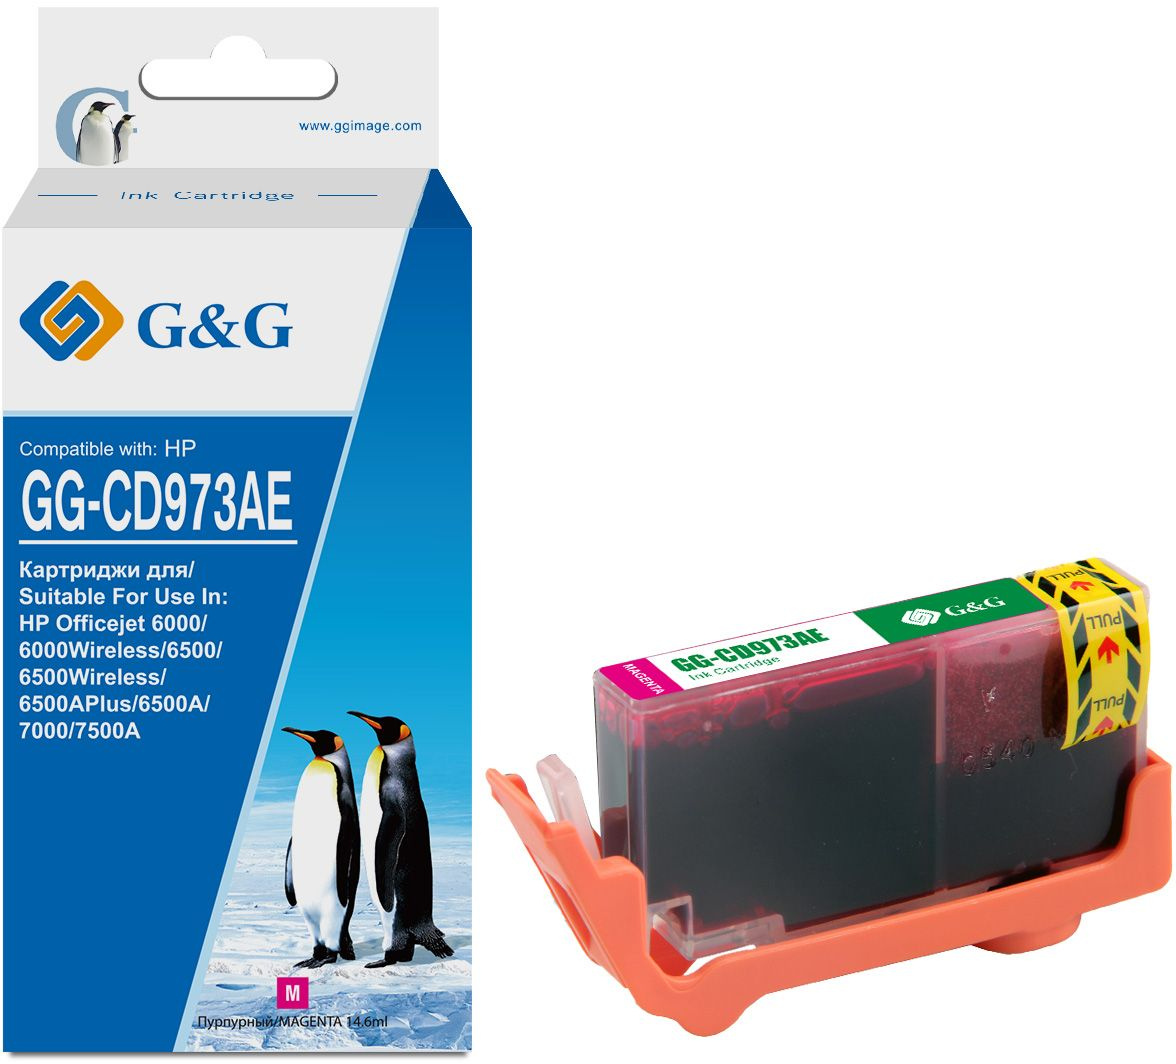  G&G GG-CD973AE,  / GG-CD973AE